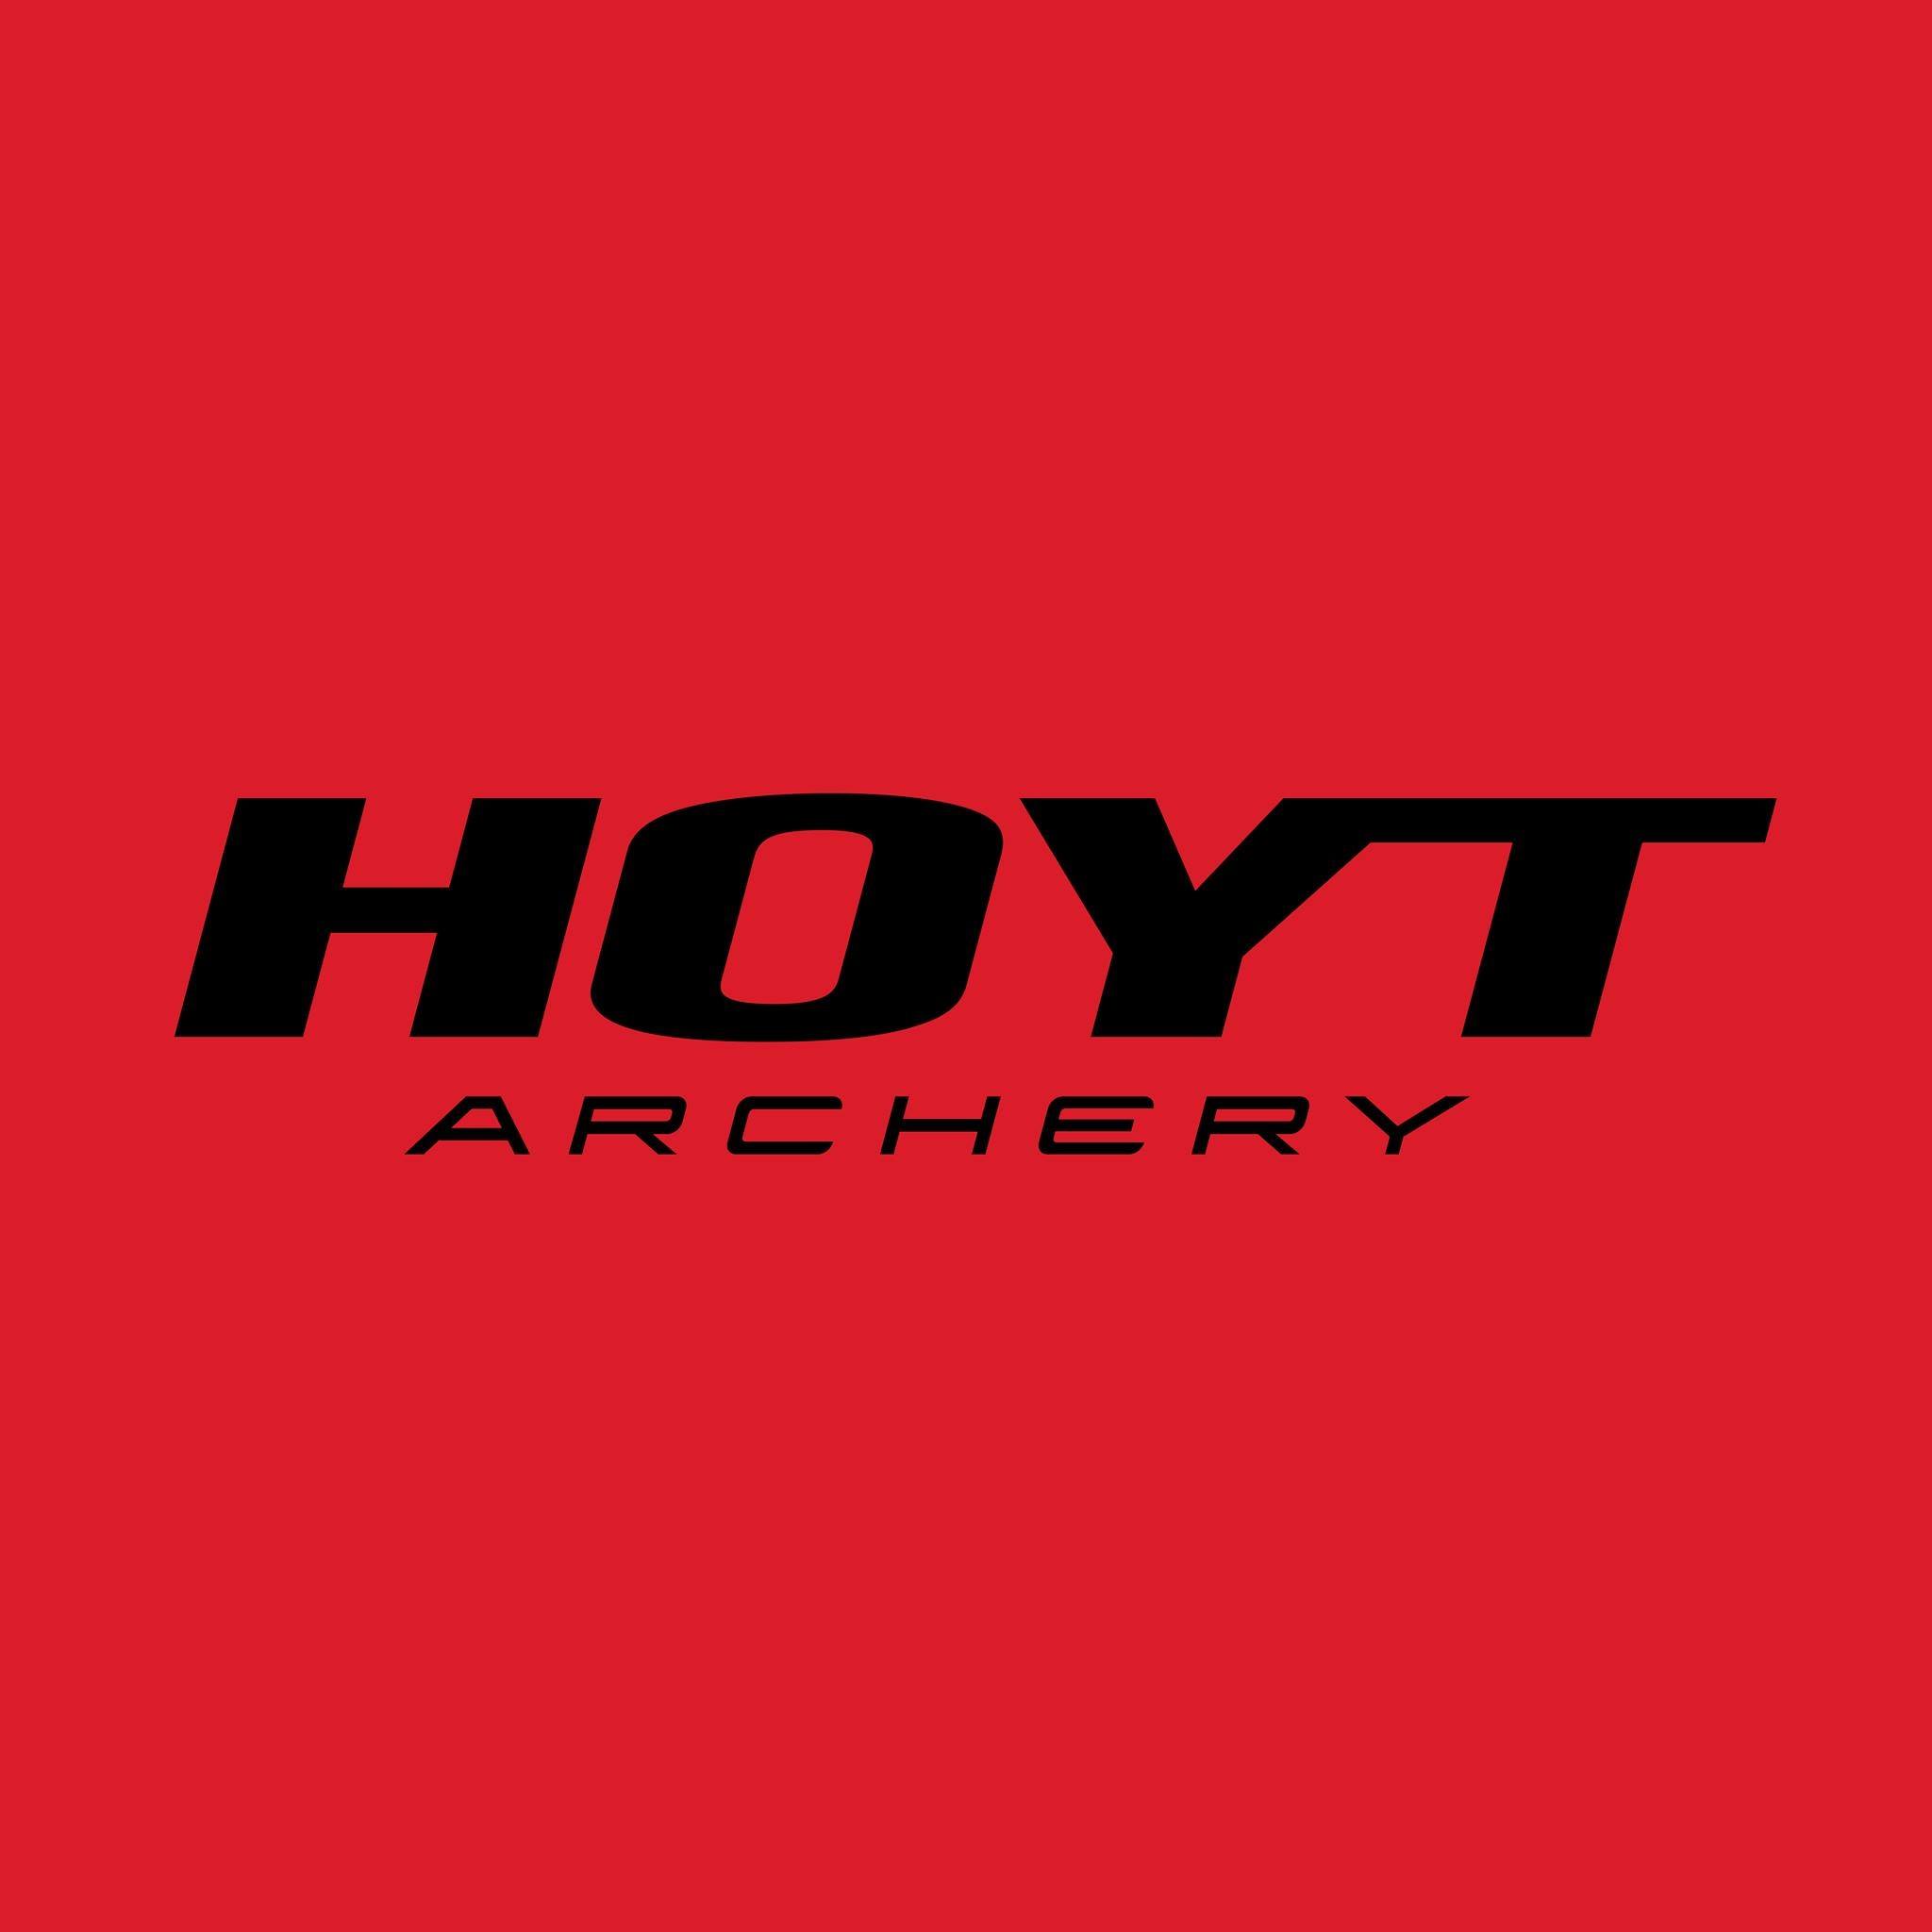 Hoyt Archery logo